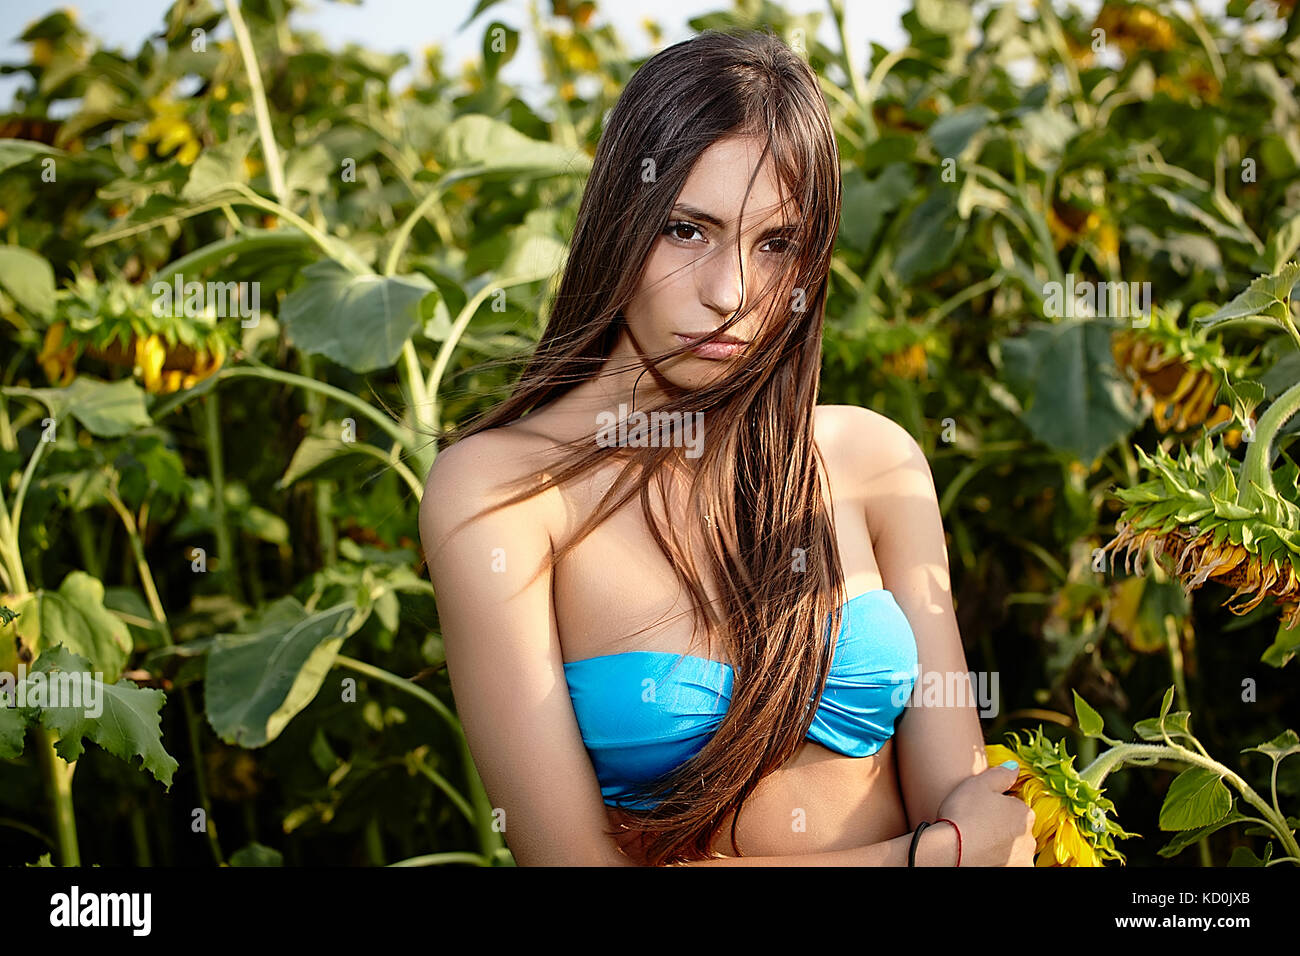 Ritratto di giovane donna in bikini top in campo di girasoli Foto Stock